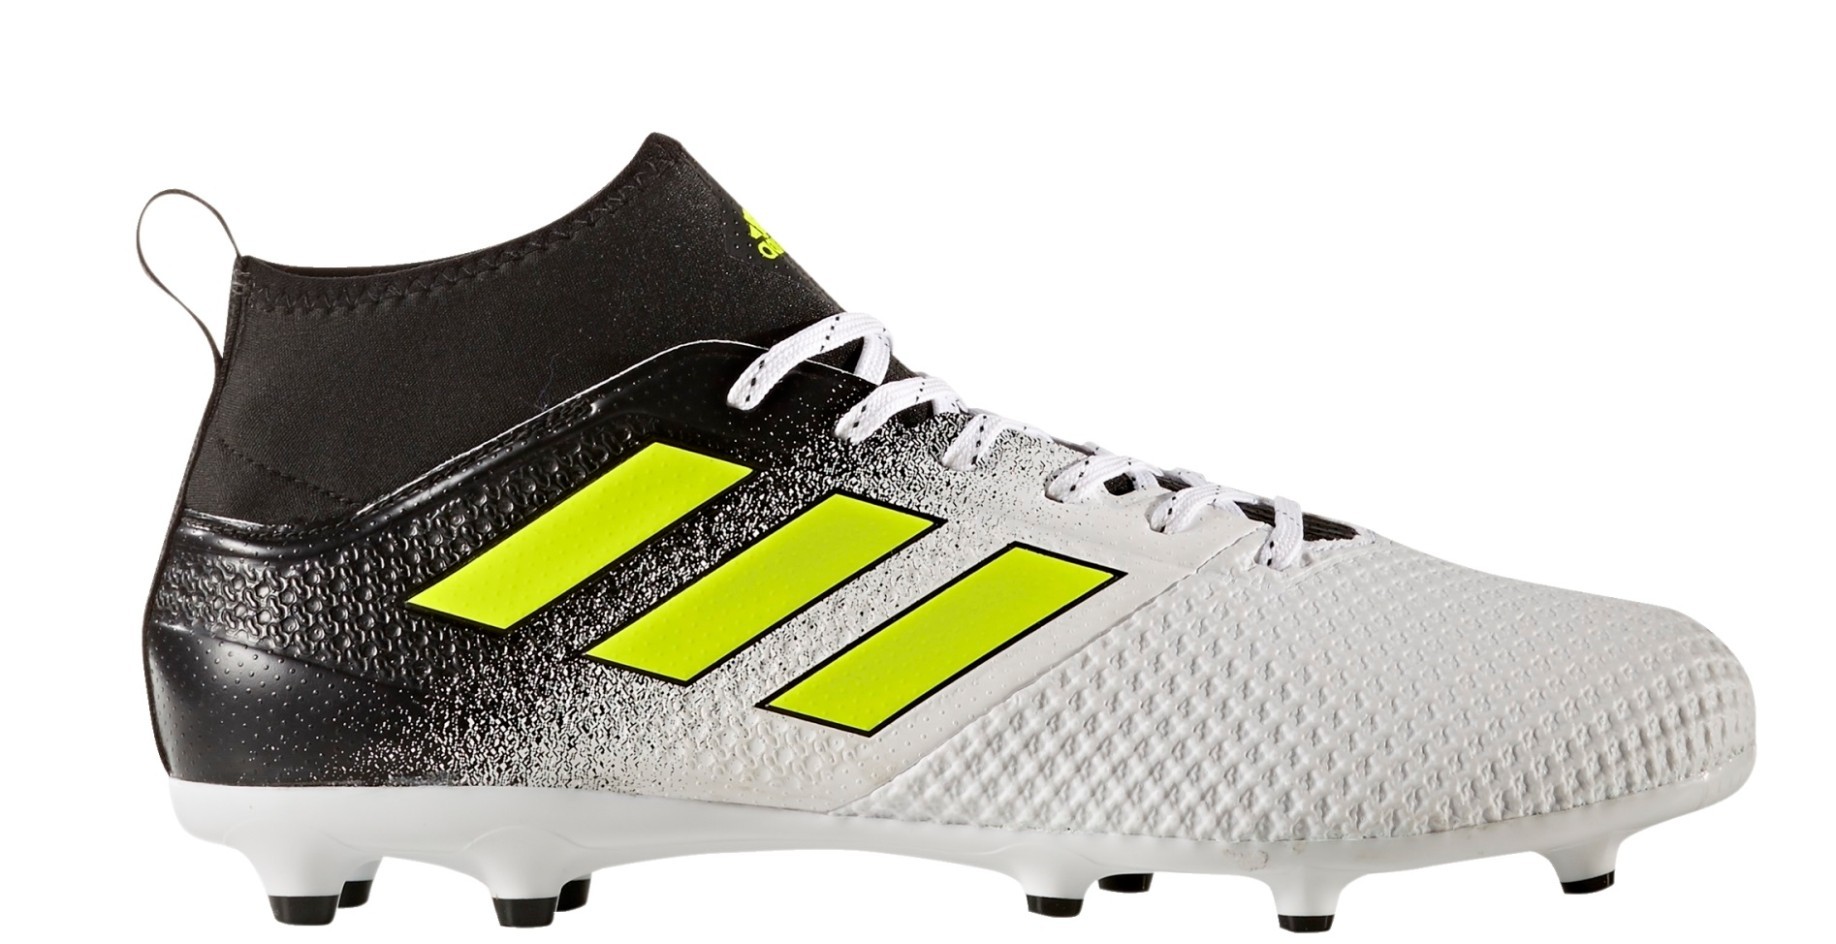 Botas de Fútbol Adidas Ace 17.3 FG Tormenta de Polvo Pack colore negro - Adidas - SportIT.com